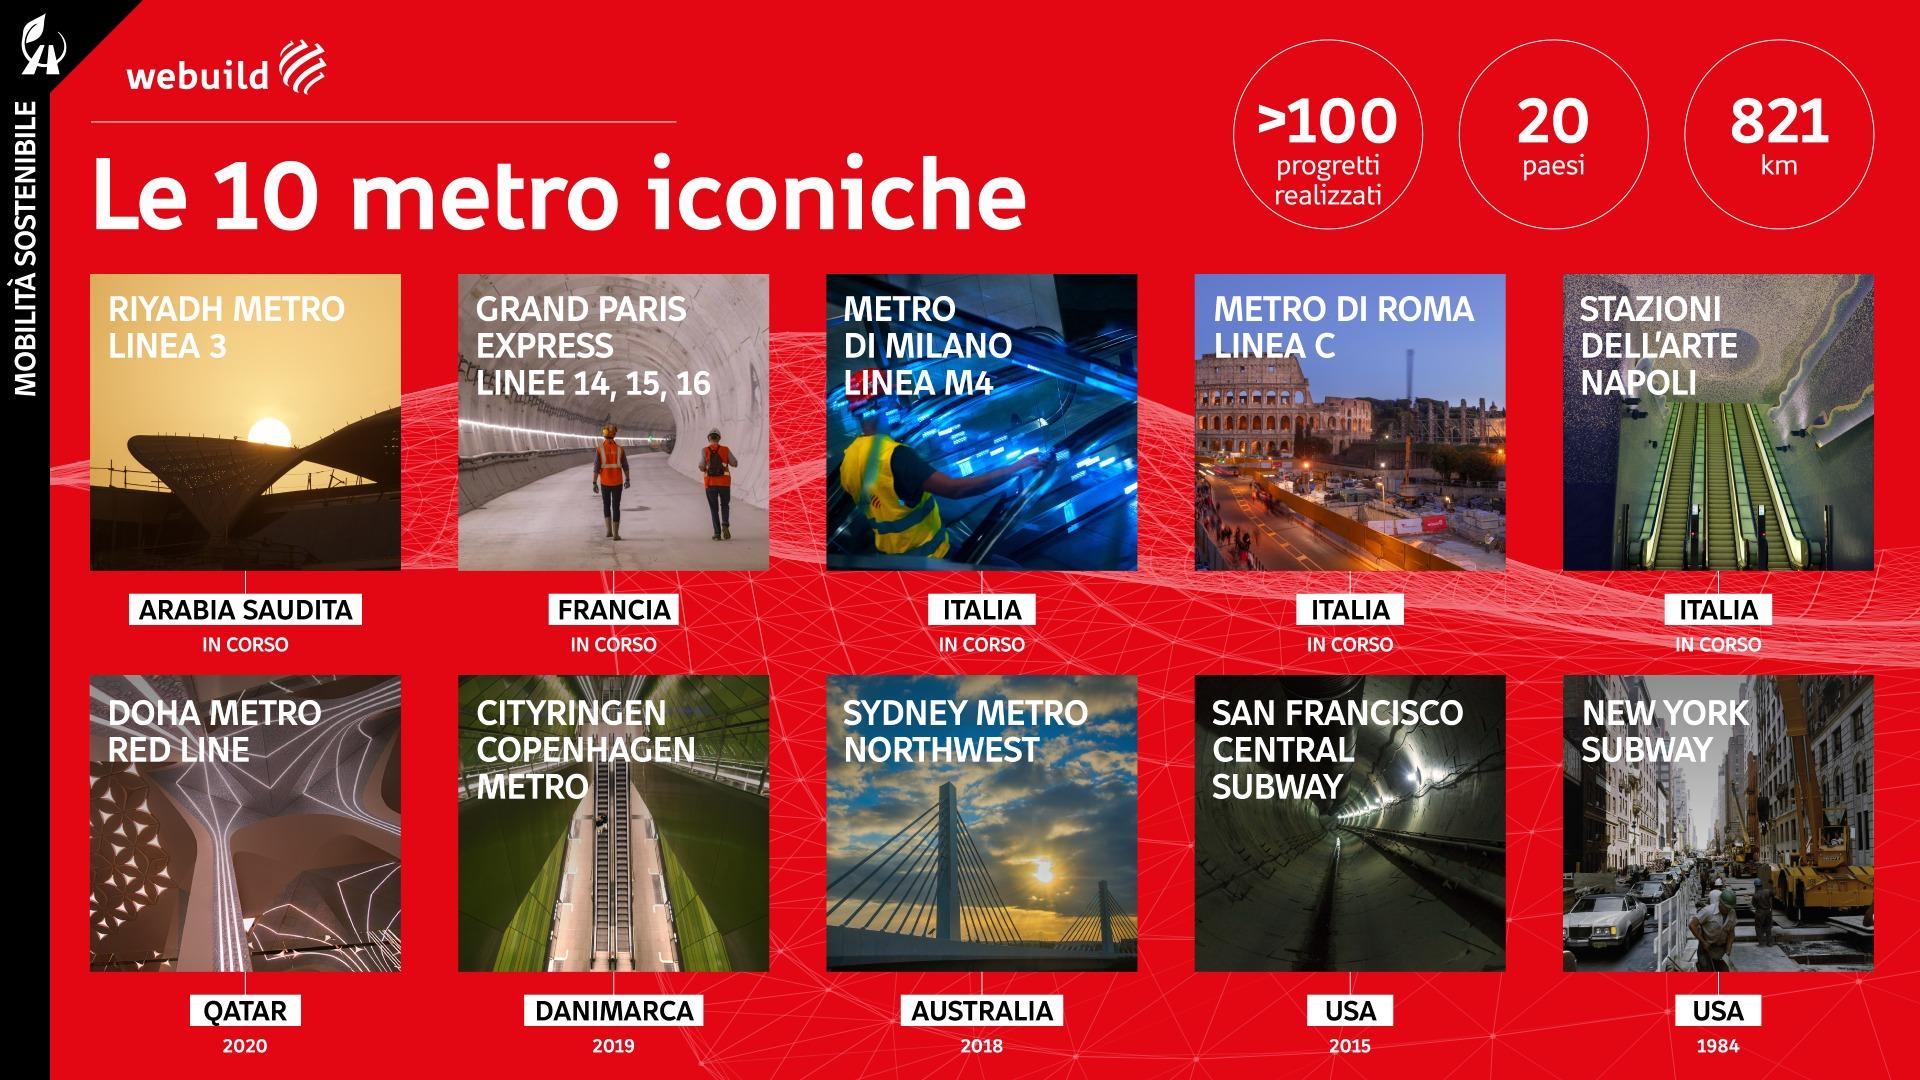 Le 10 Metro iconiche di Webuild, infografica